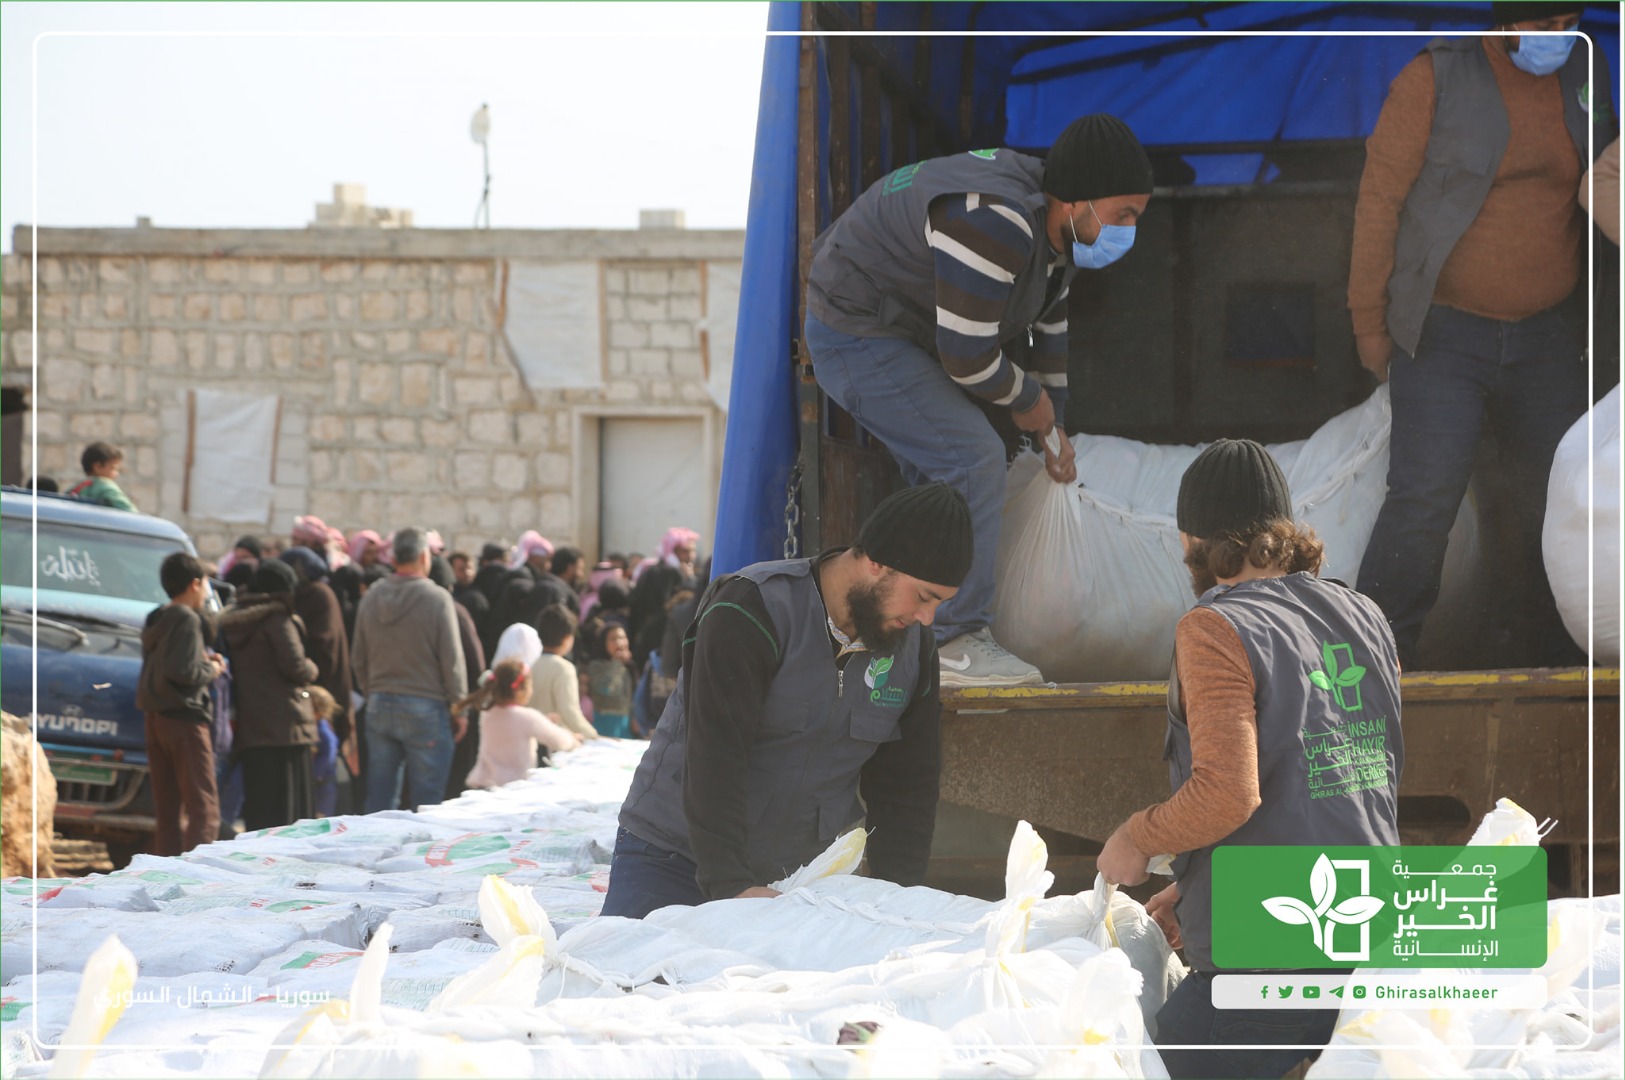 المرحلة الثانية من شاحنات نواف العطاء استمرار توزيع المساعدات في مخيمات الشمال السوري 2021